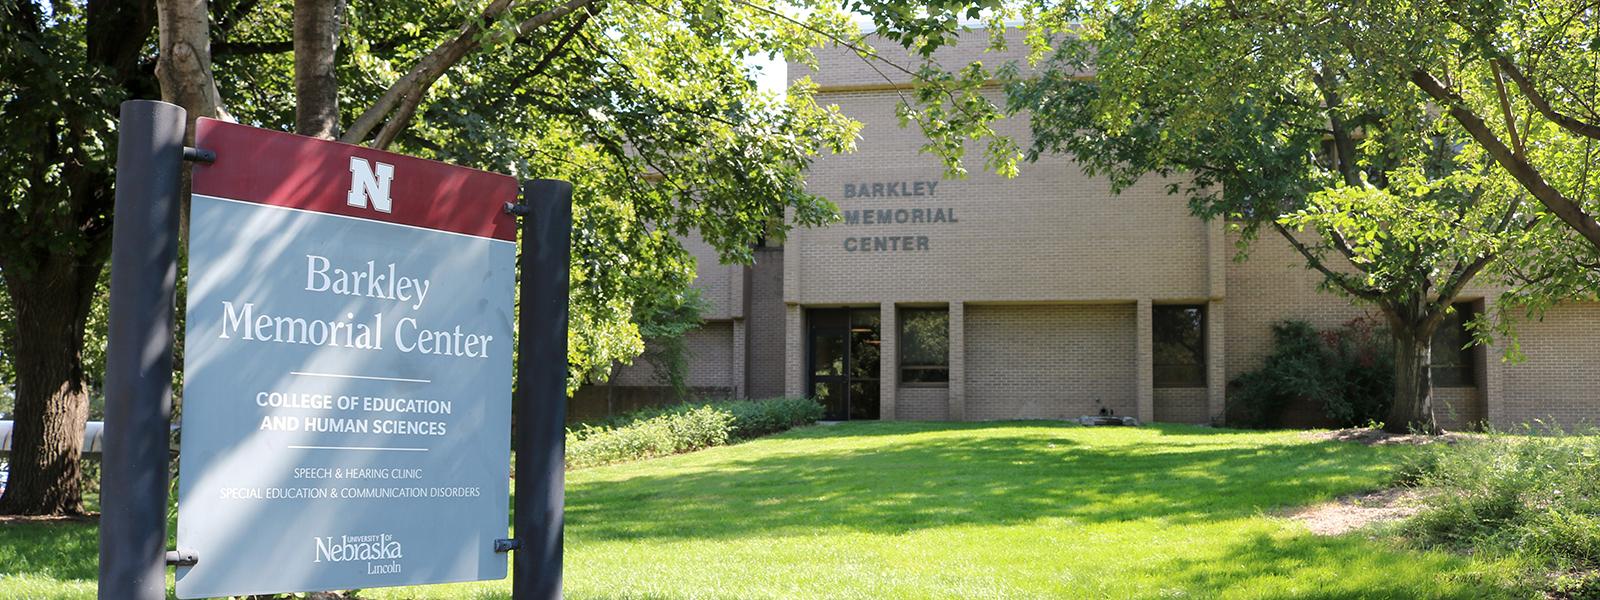 Barkley Memorial Center